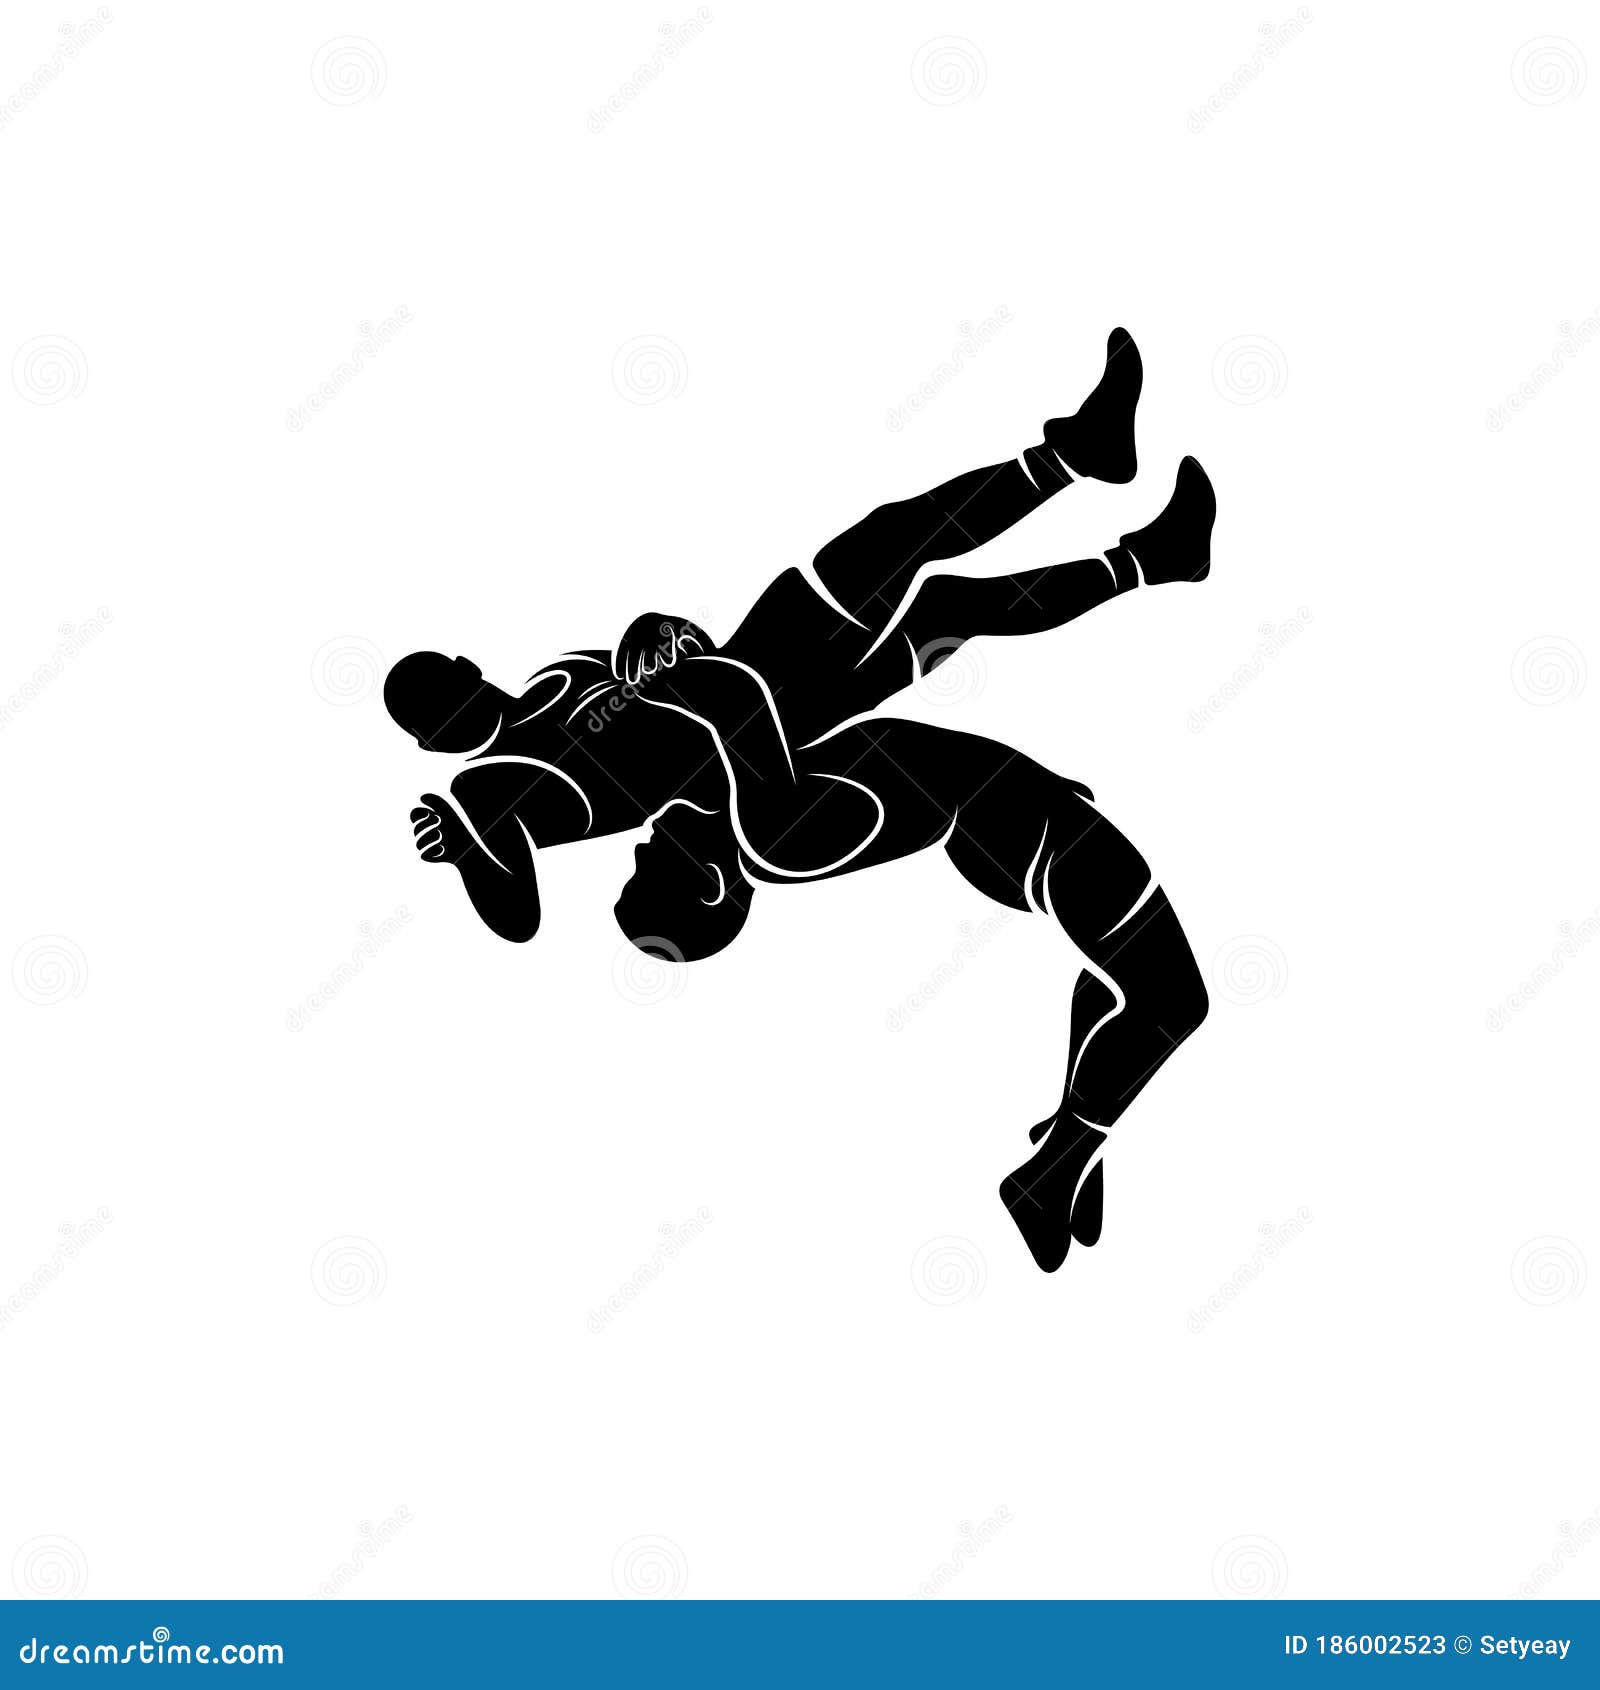 男孩和女孩从轮滑滑板上摔下来和踢滑板车矢量集 — 图库矢量图像© TopVectors #535059042